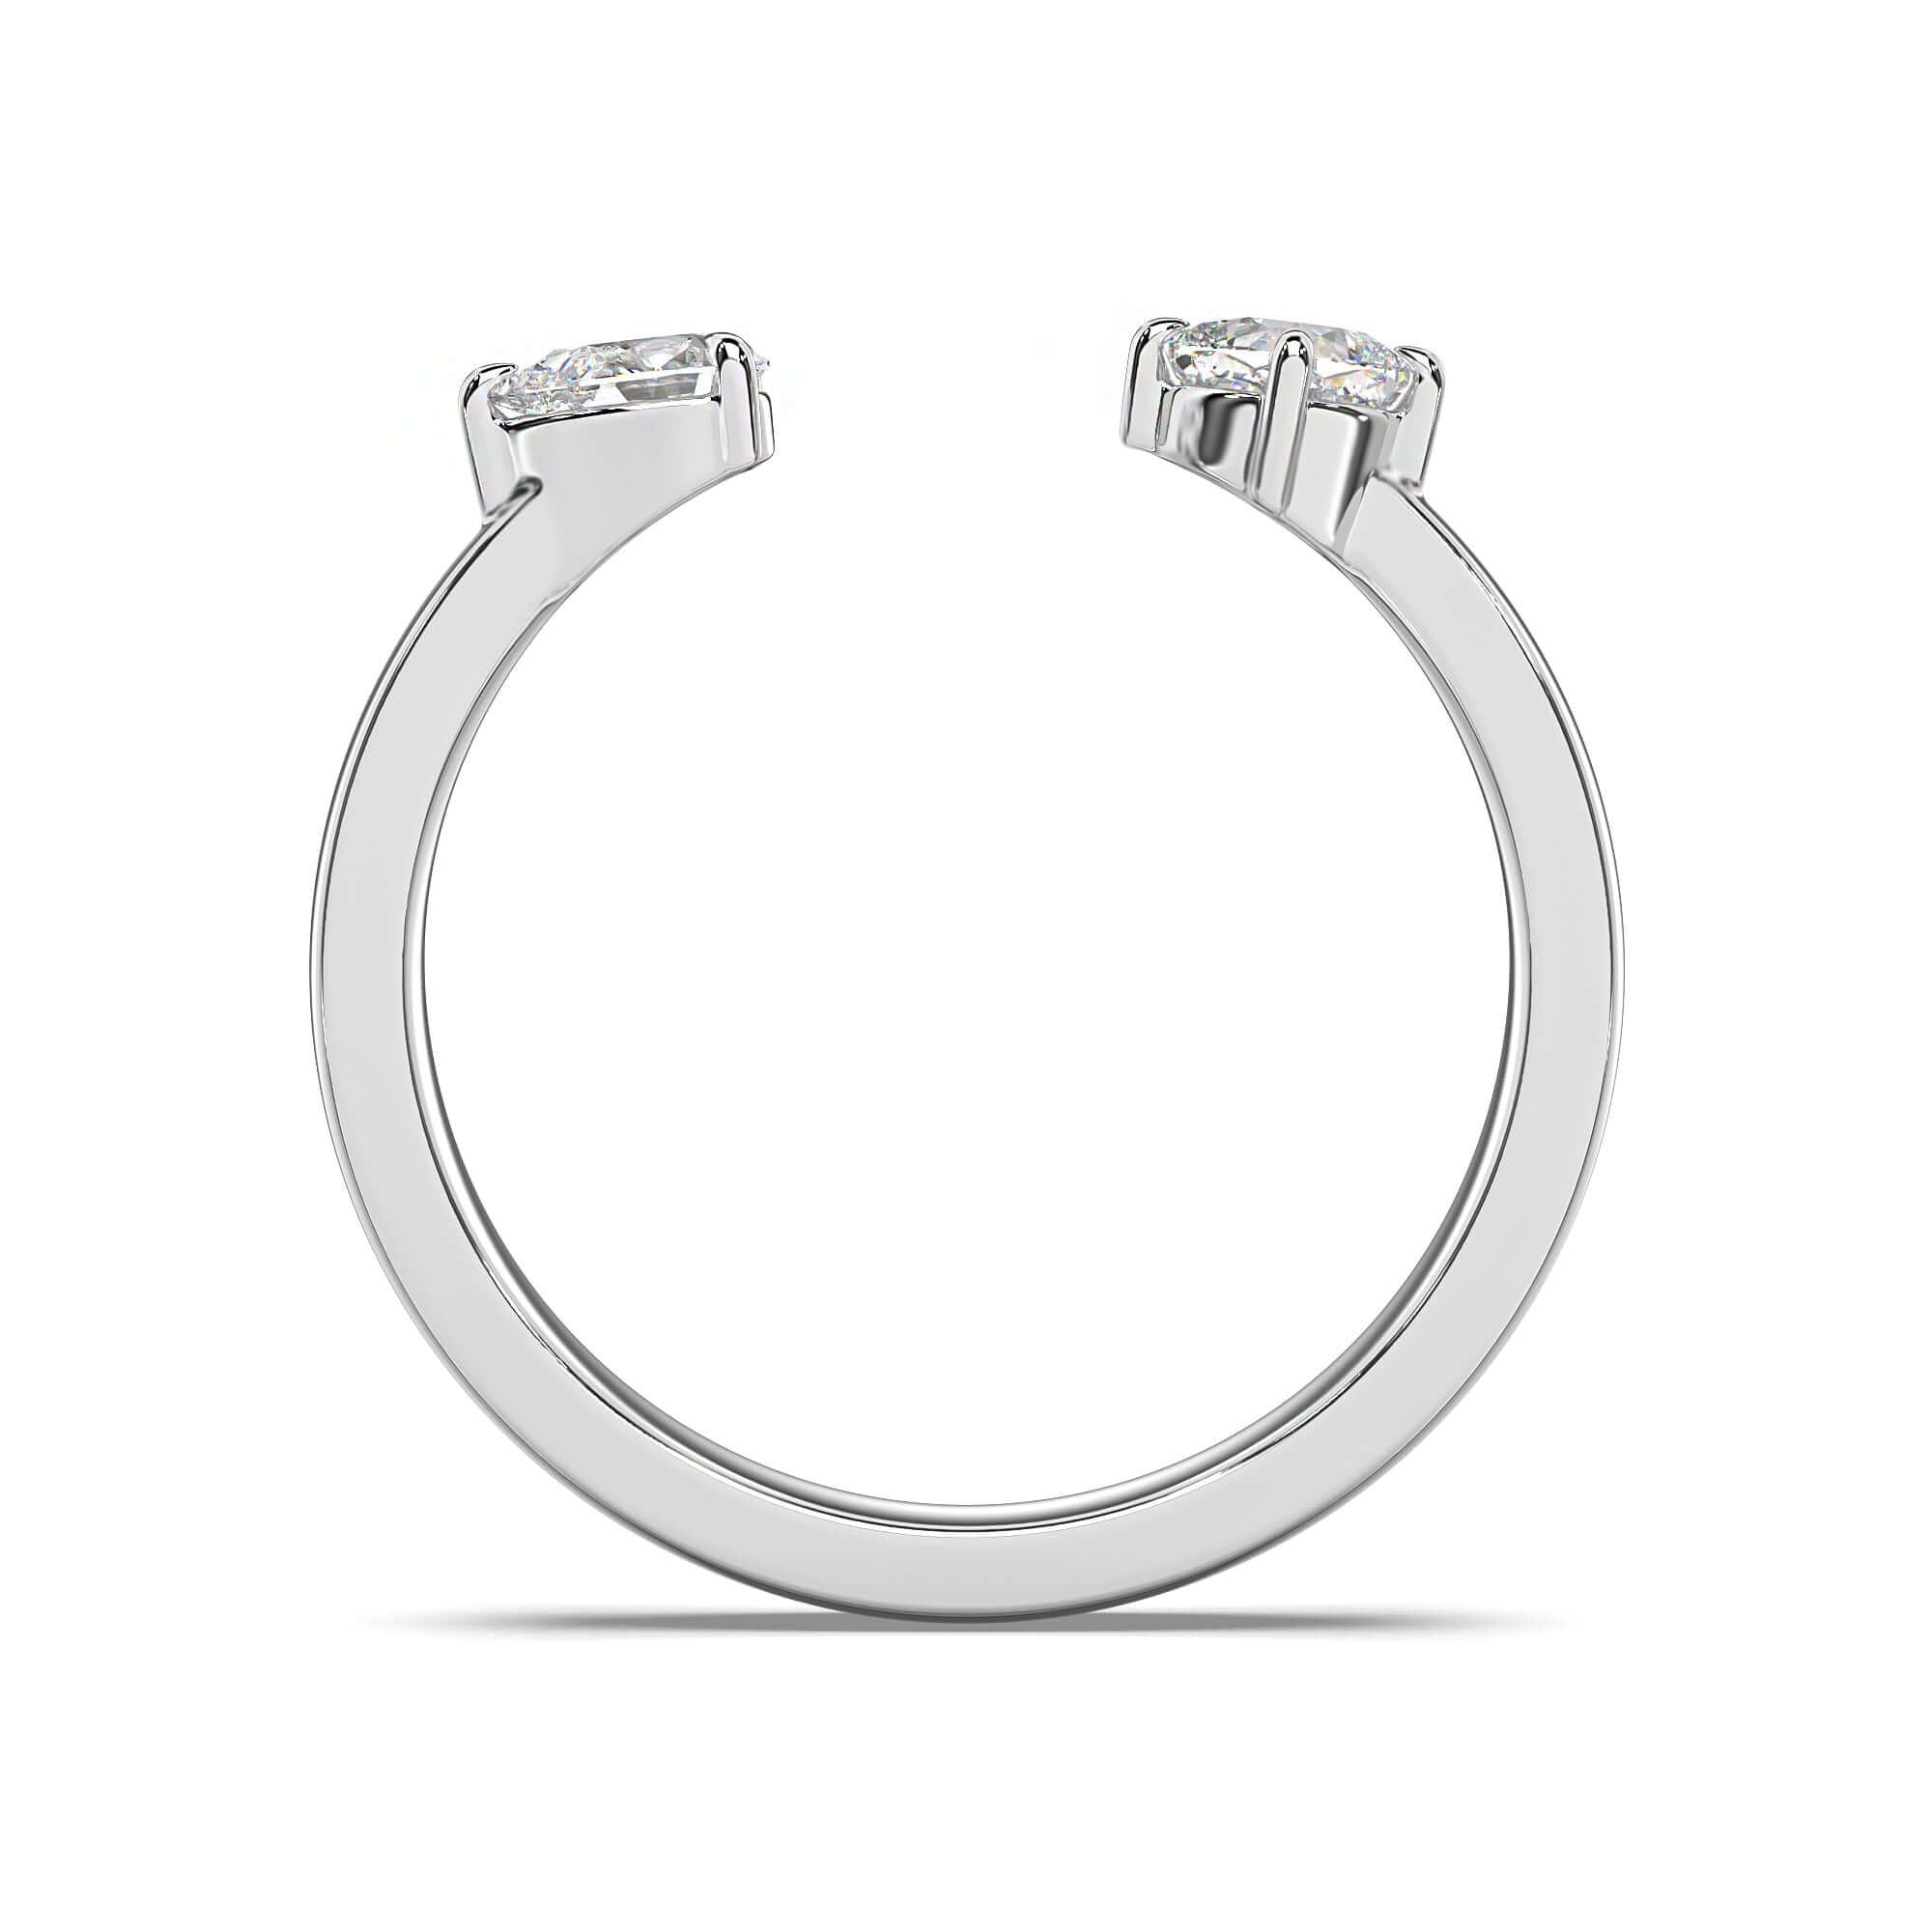 Petite Quinn - Pear & Cushion Diamond Engagement Ring